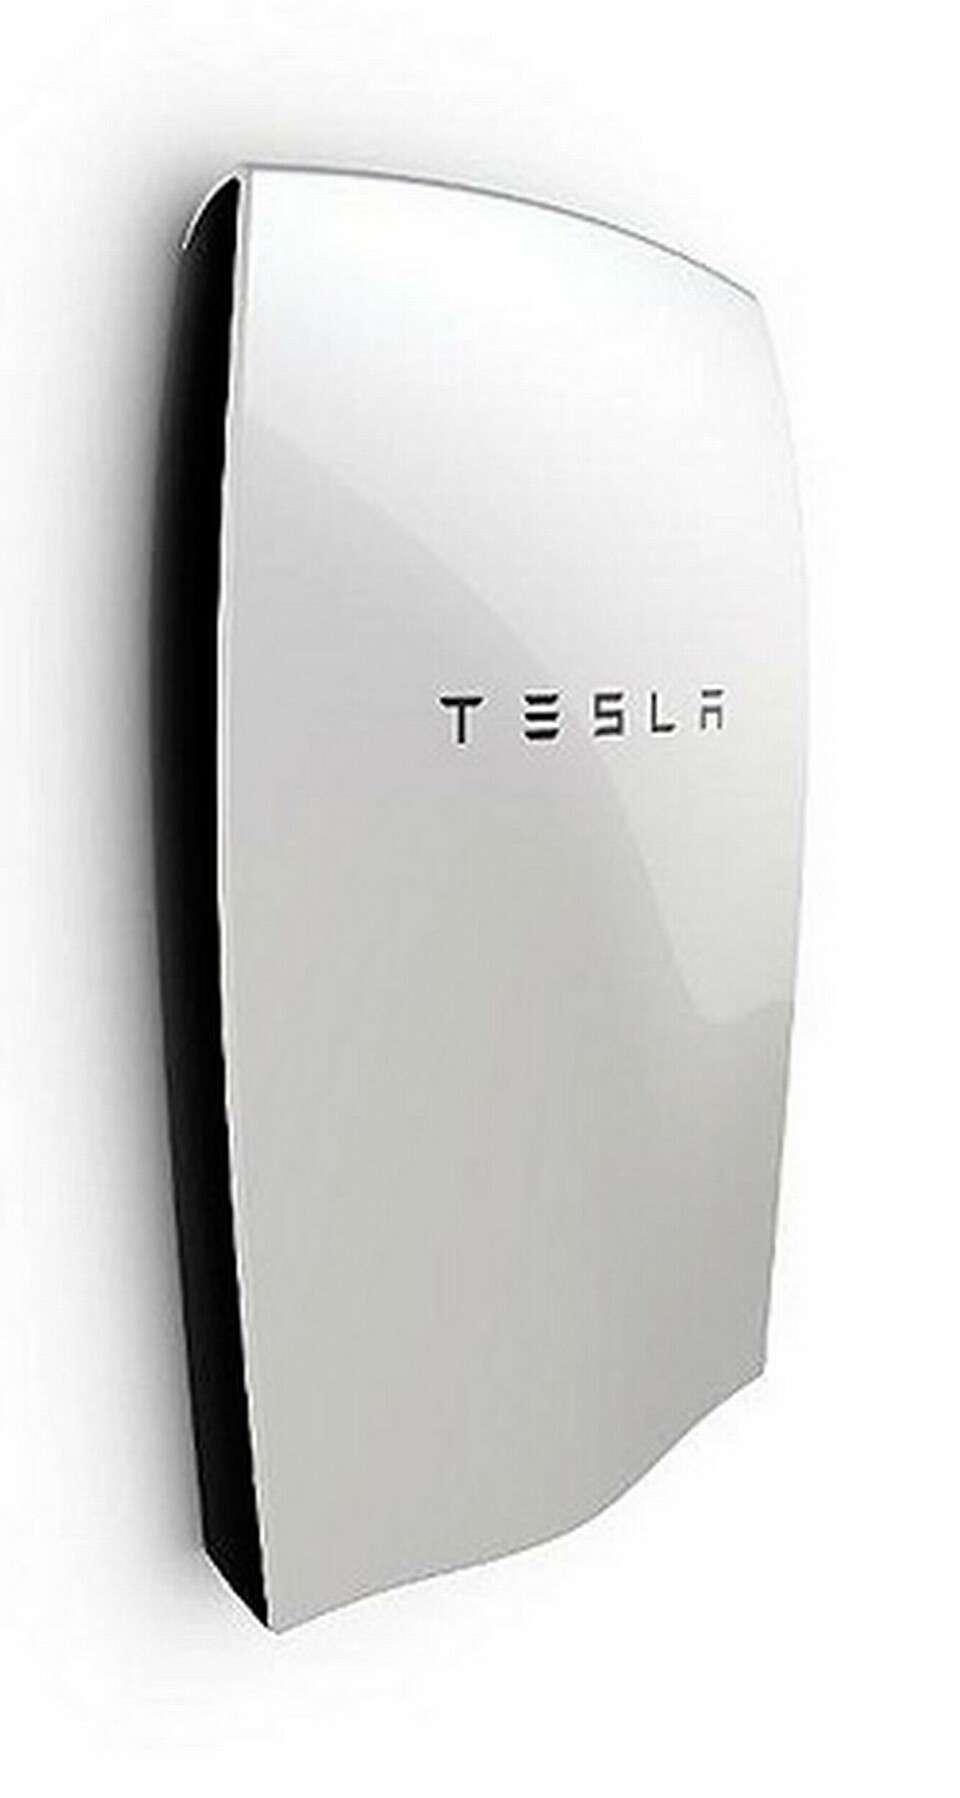 Teslas hembatteri för att lagra solel. Foto: Tesla Energy